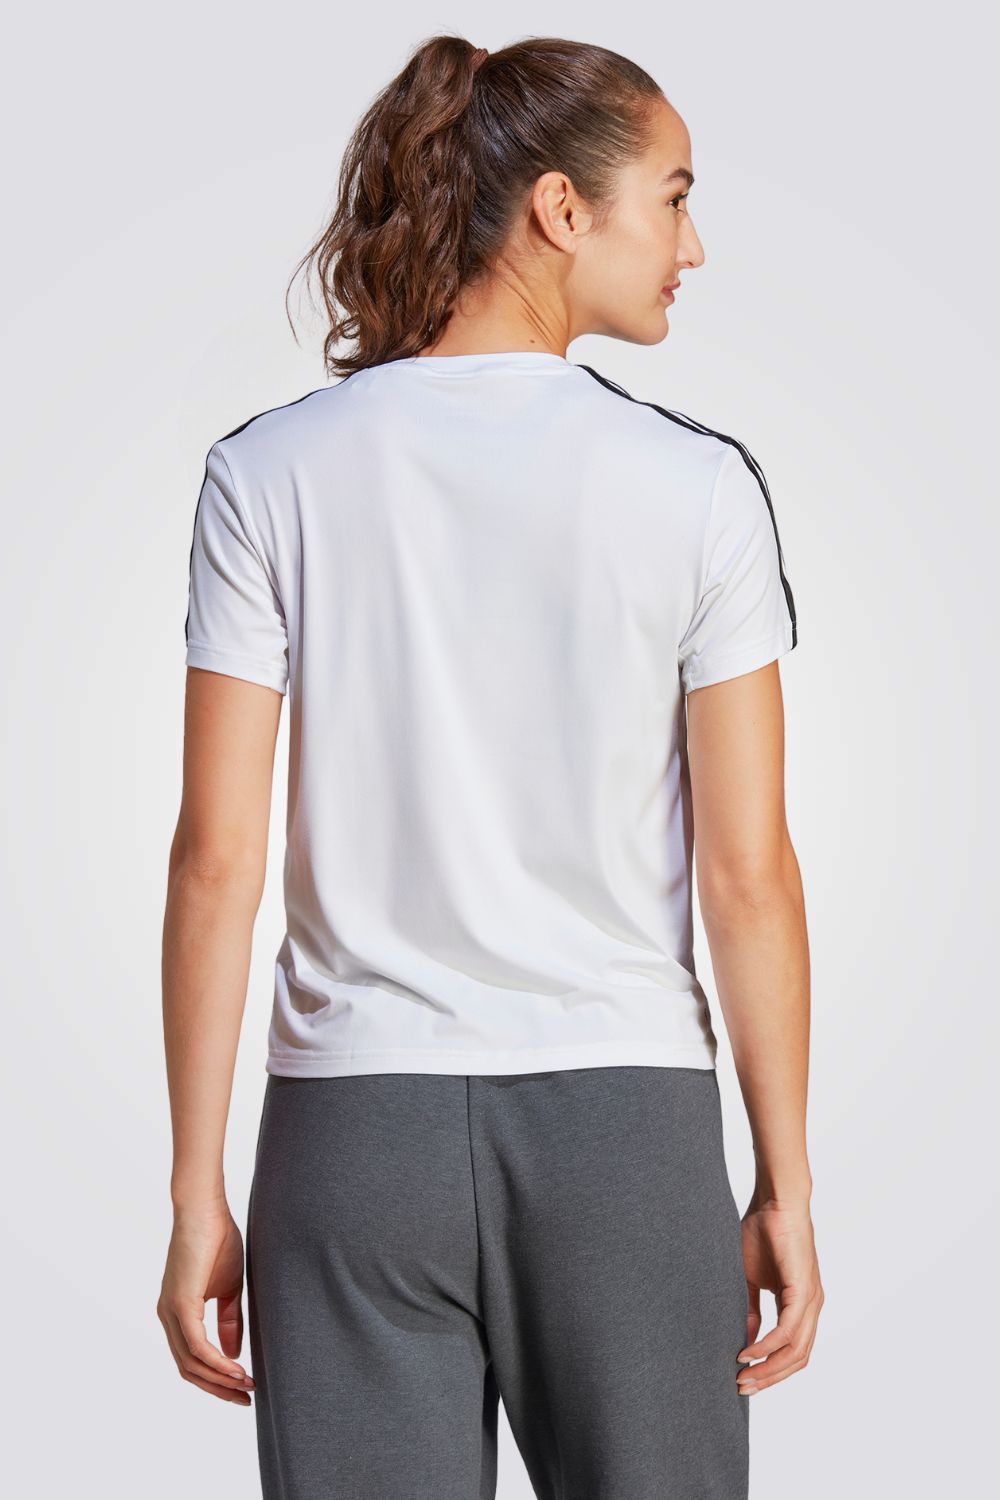 חולצה מבית המותג ADIDAS, עשויה מבד מנדף זיעה ששומר על הגוף שלך מאורר לאורך כל האימון.